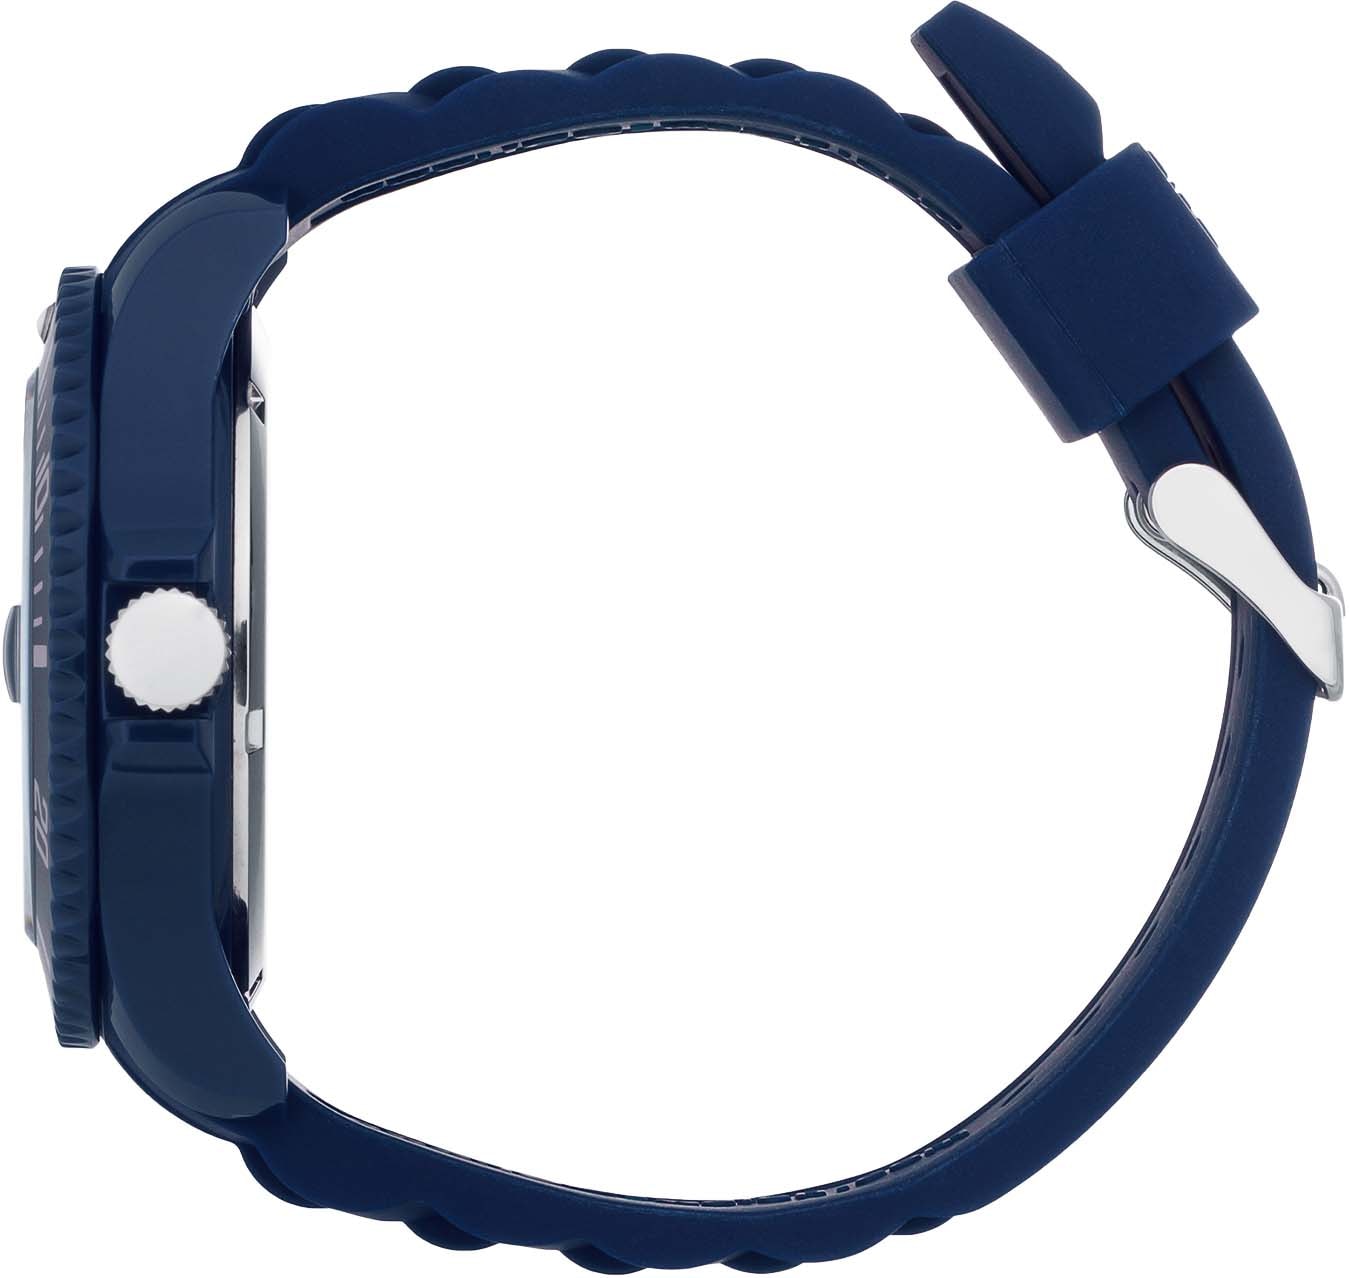 ice-watch Quarzuhr »ICE forever- Dark blue- BIO L, 020340« bei ♕